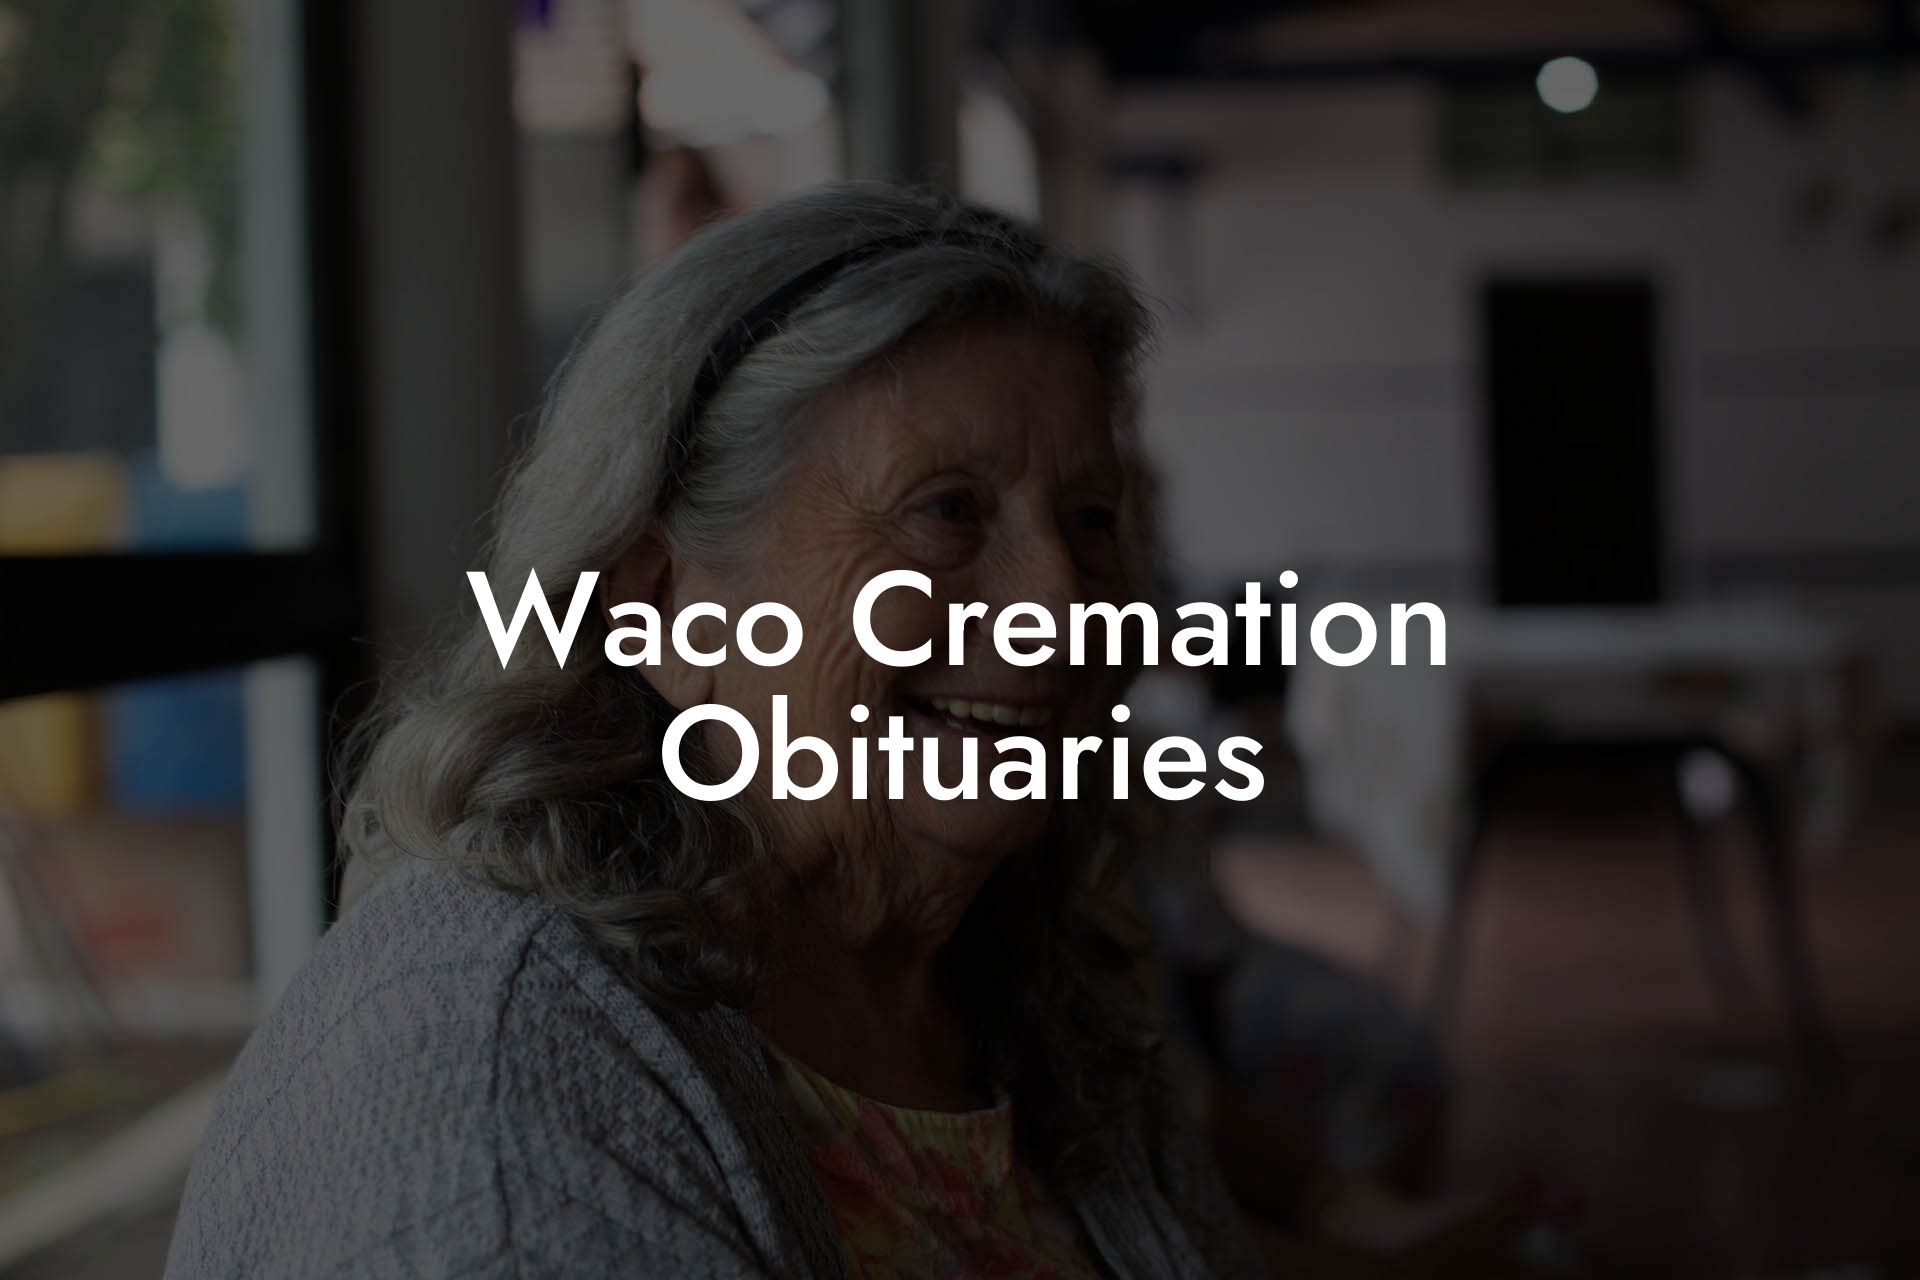 Waco Cremation Obituaries